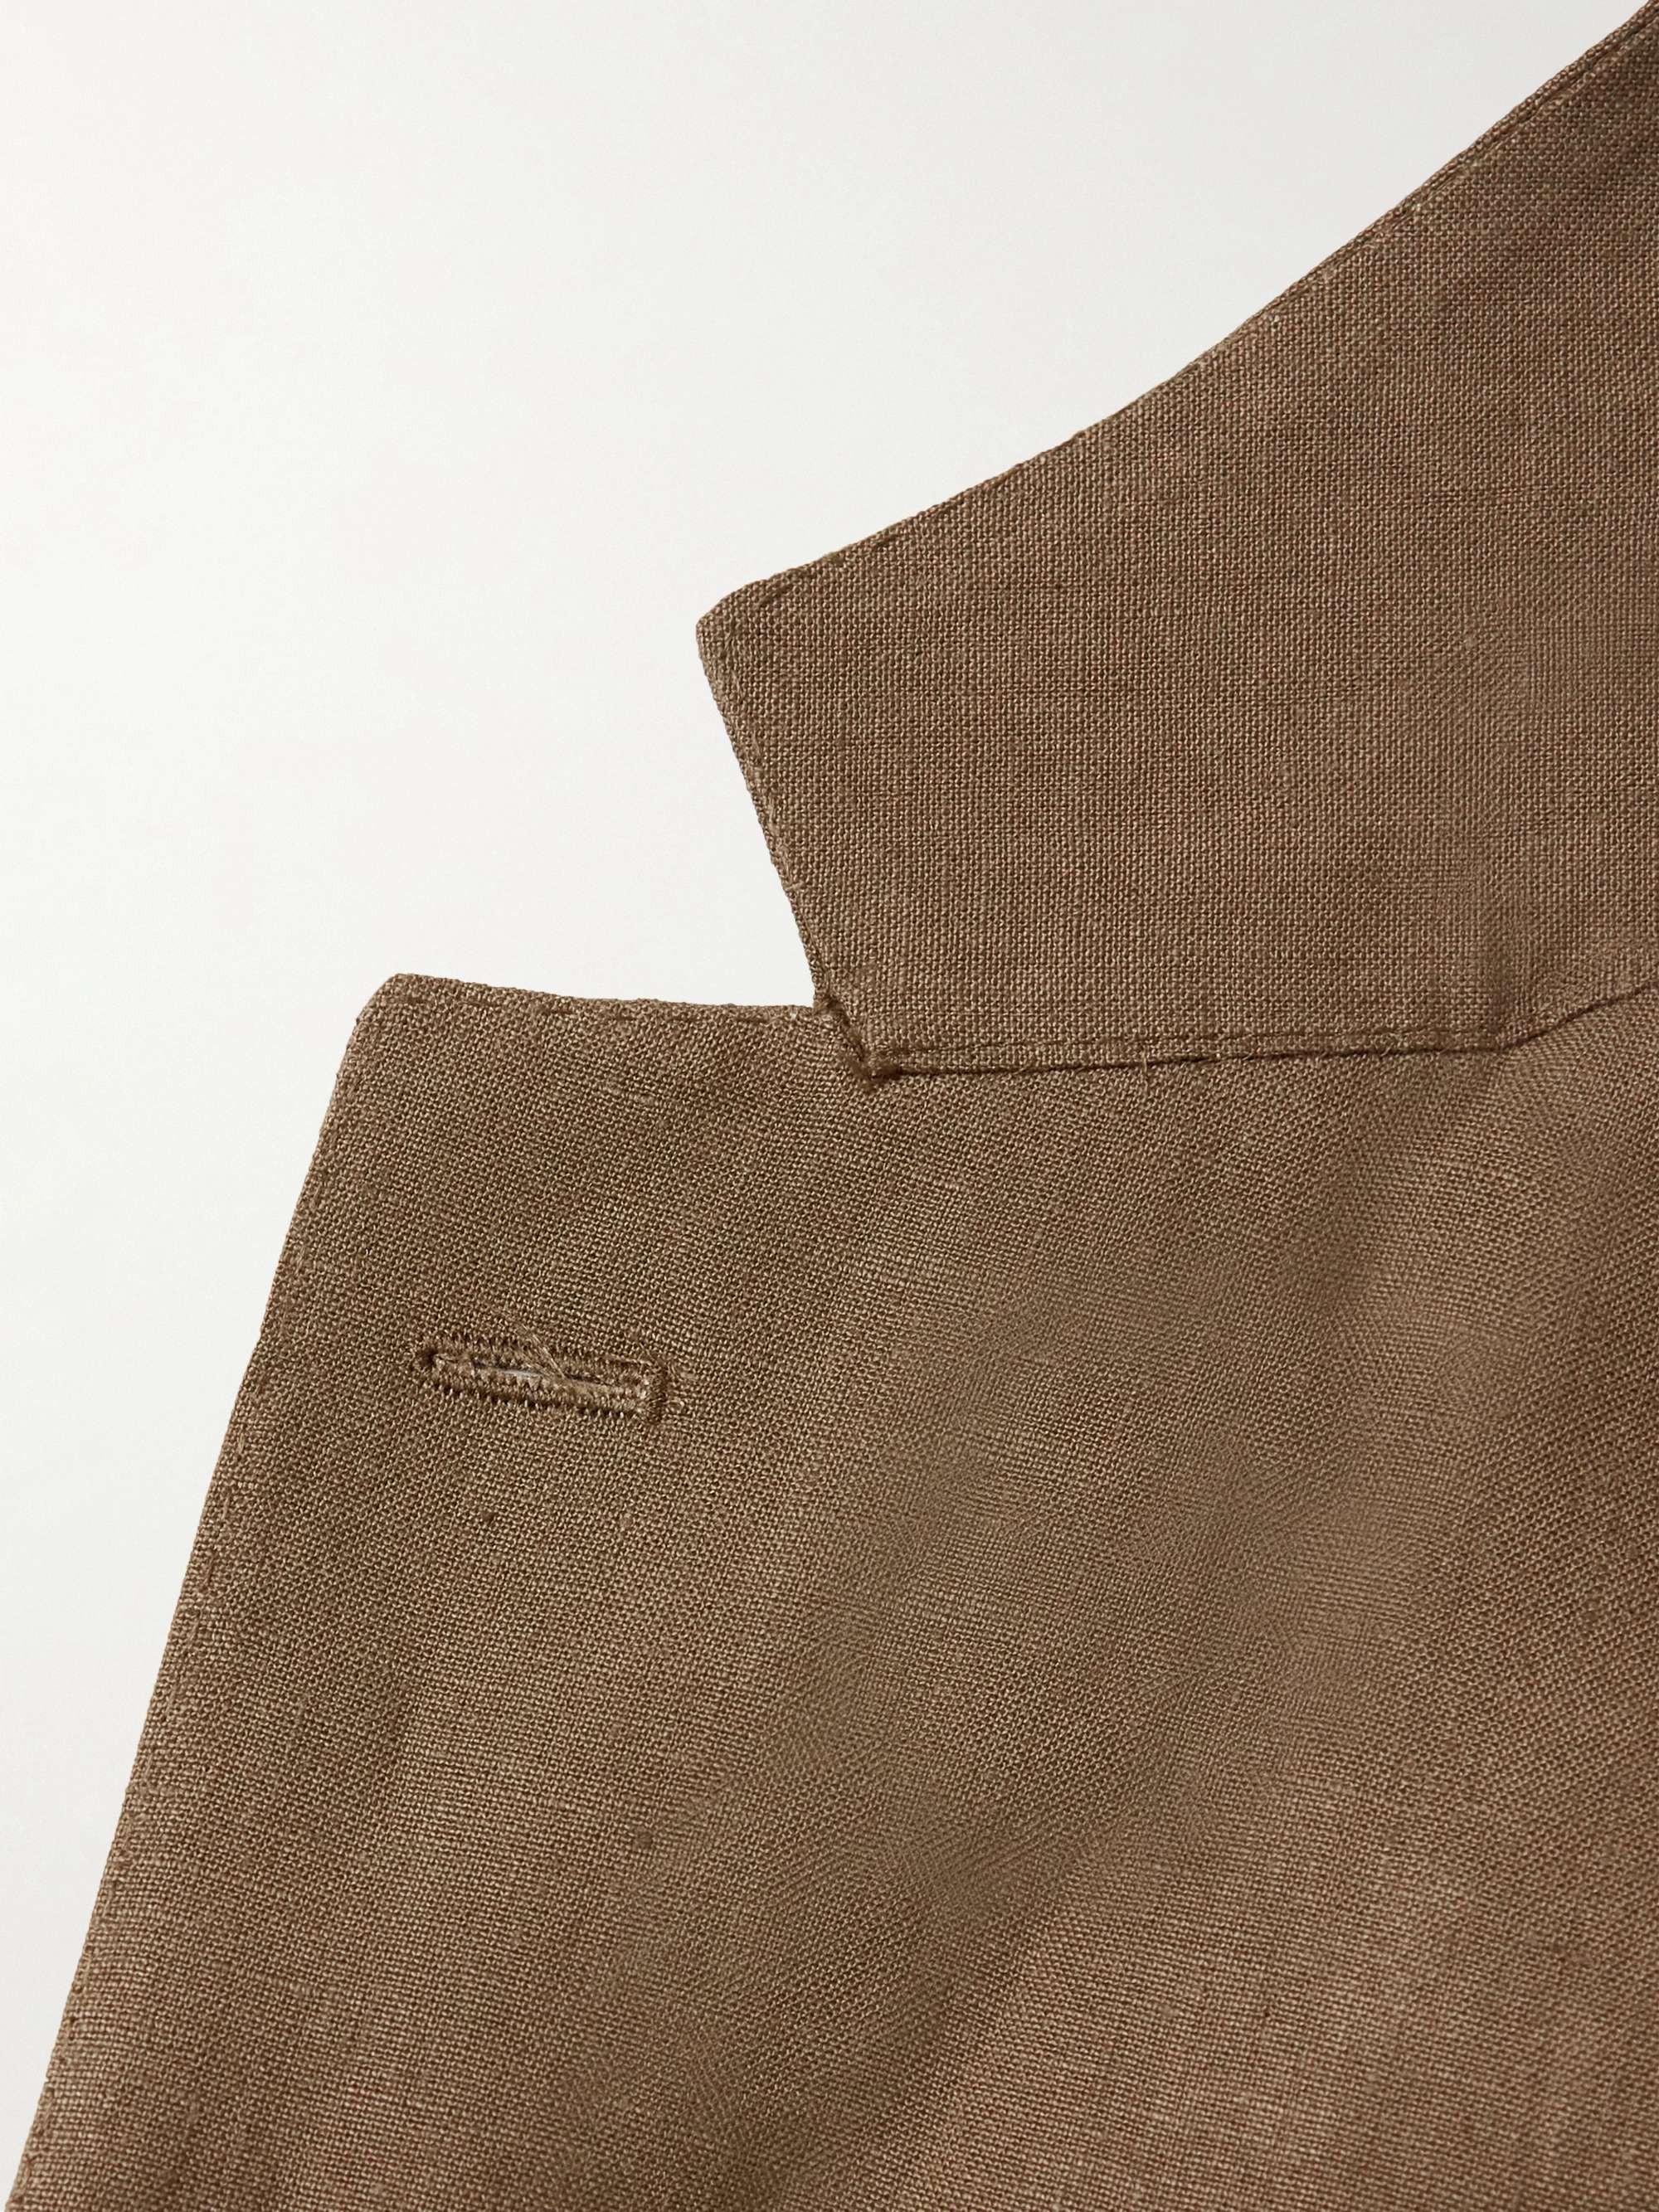 DE PETRILLO Unstructured Linen Suit Jacket